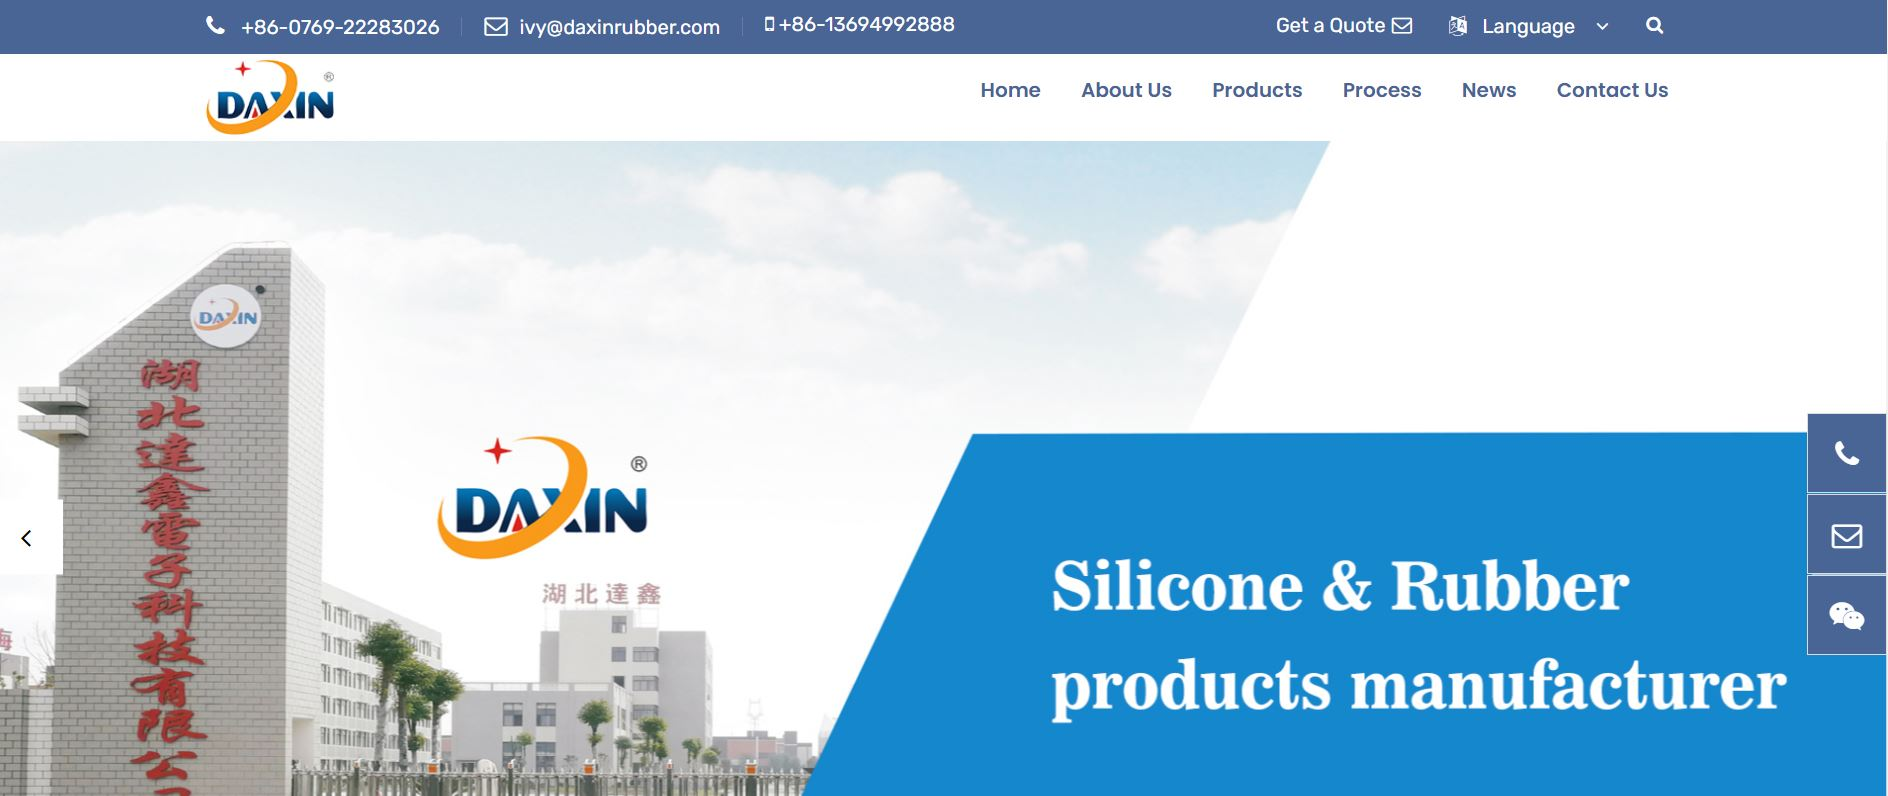 Dongguan Daxin Rubber Electronic Co. Ltd.